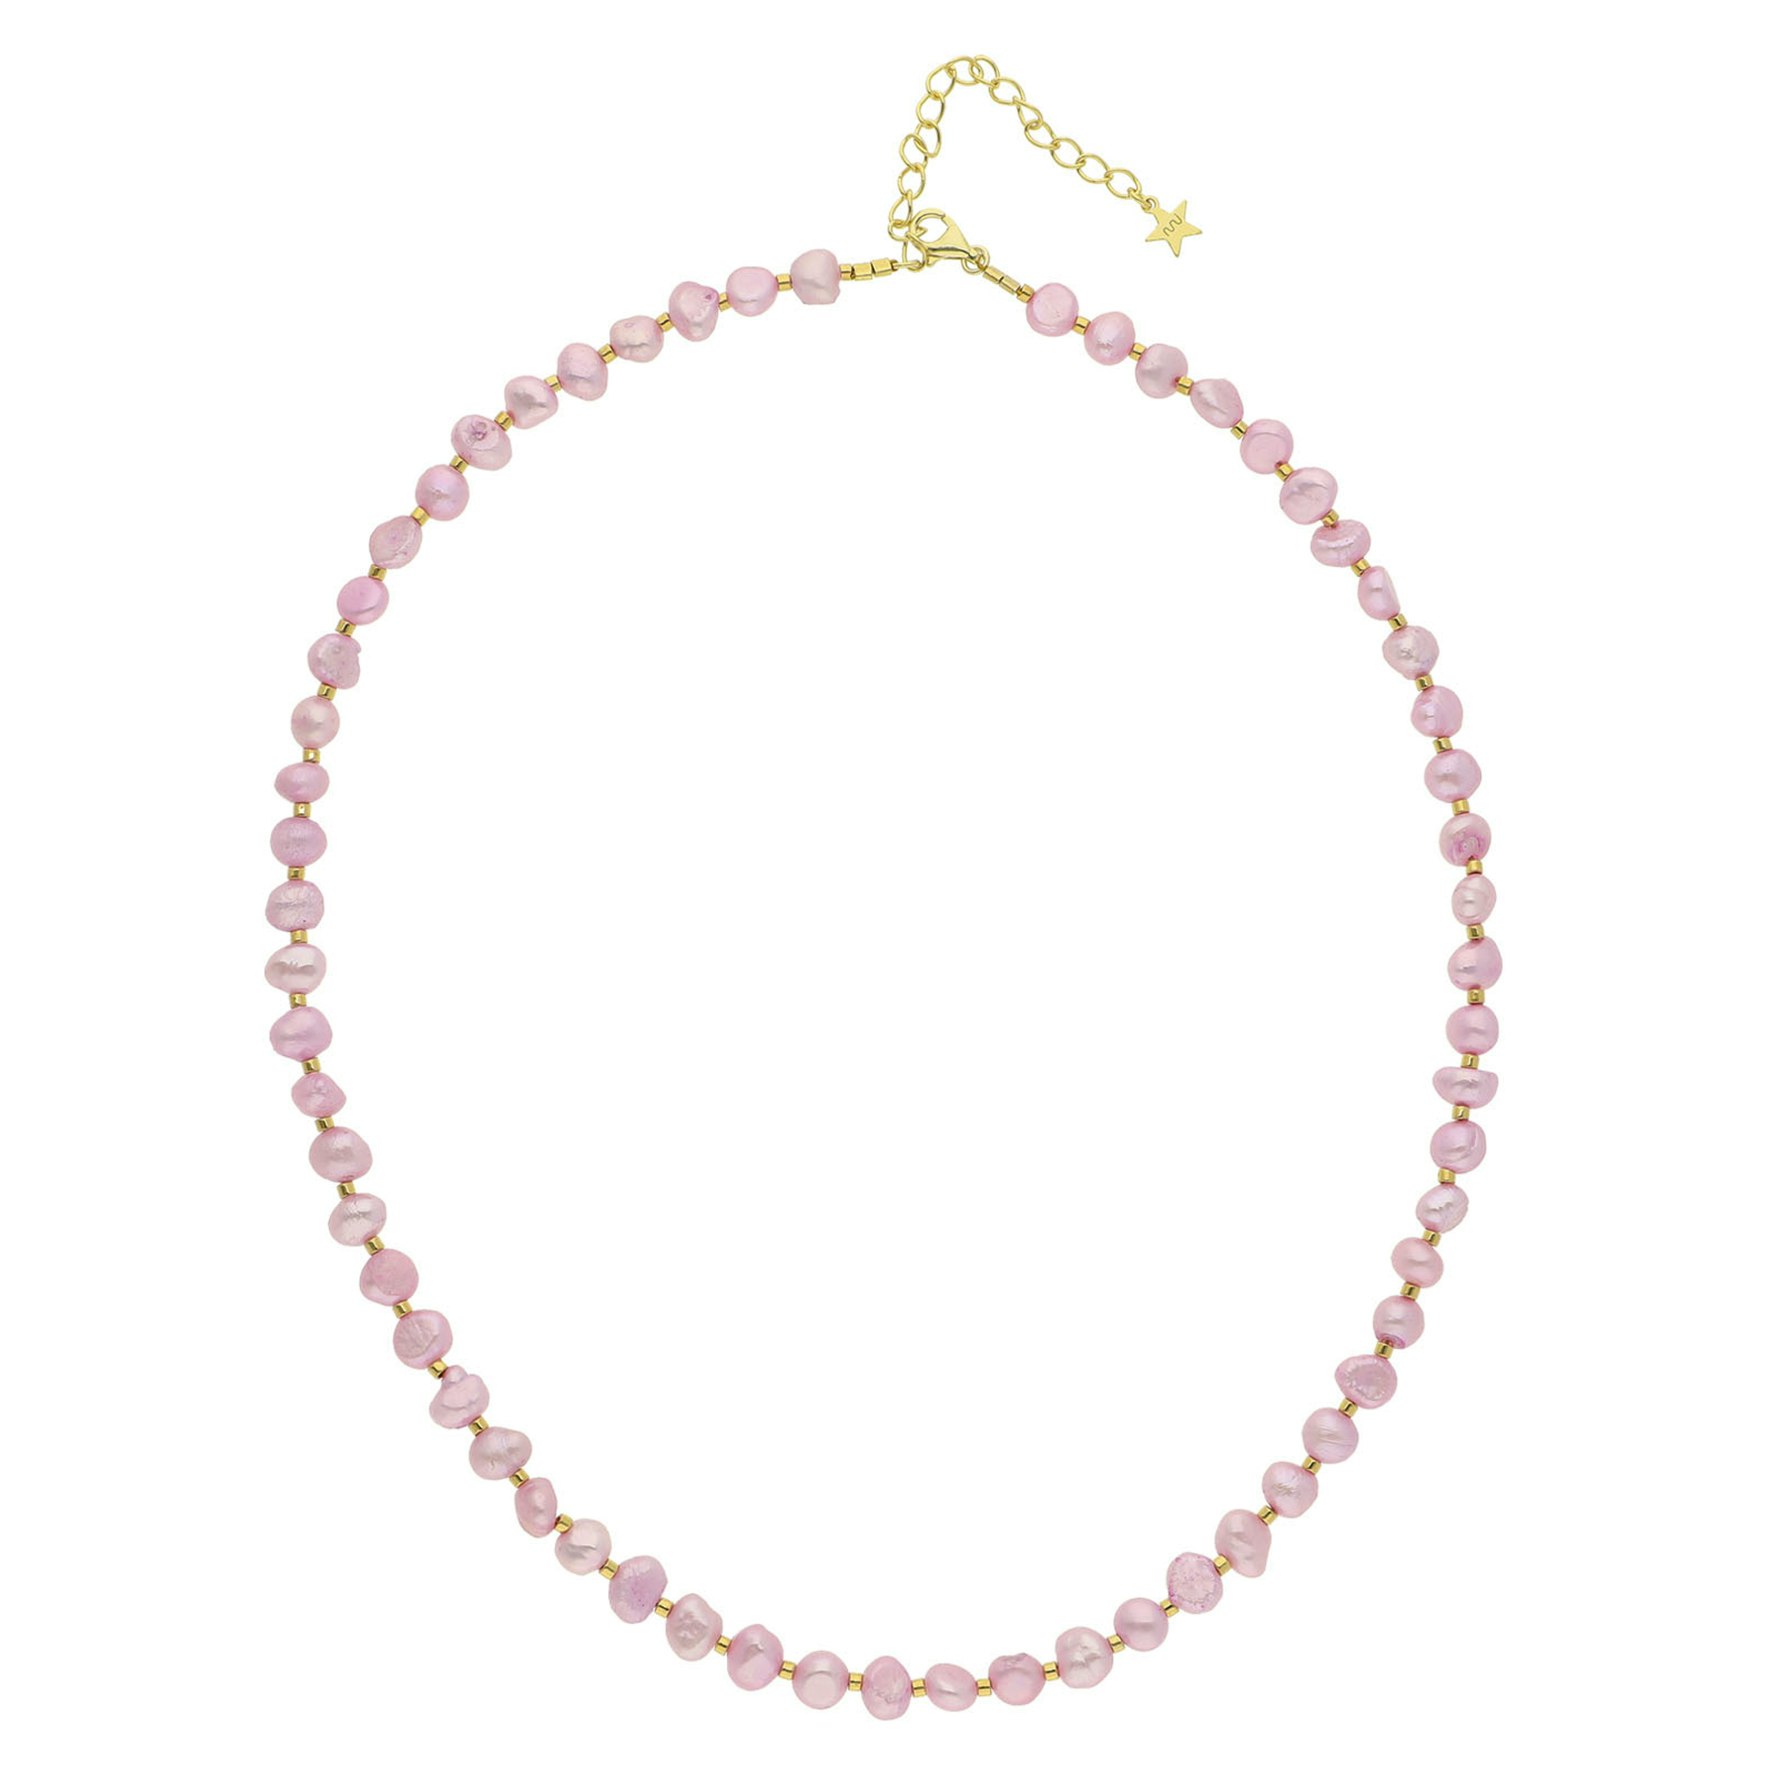 Ditte Light Pink Necklace von Nuni Copenhagen in Vergoldet-Silber Sterling 925